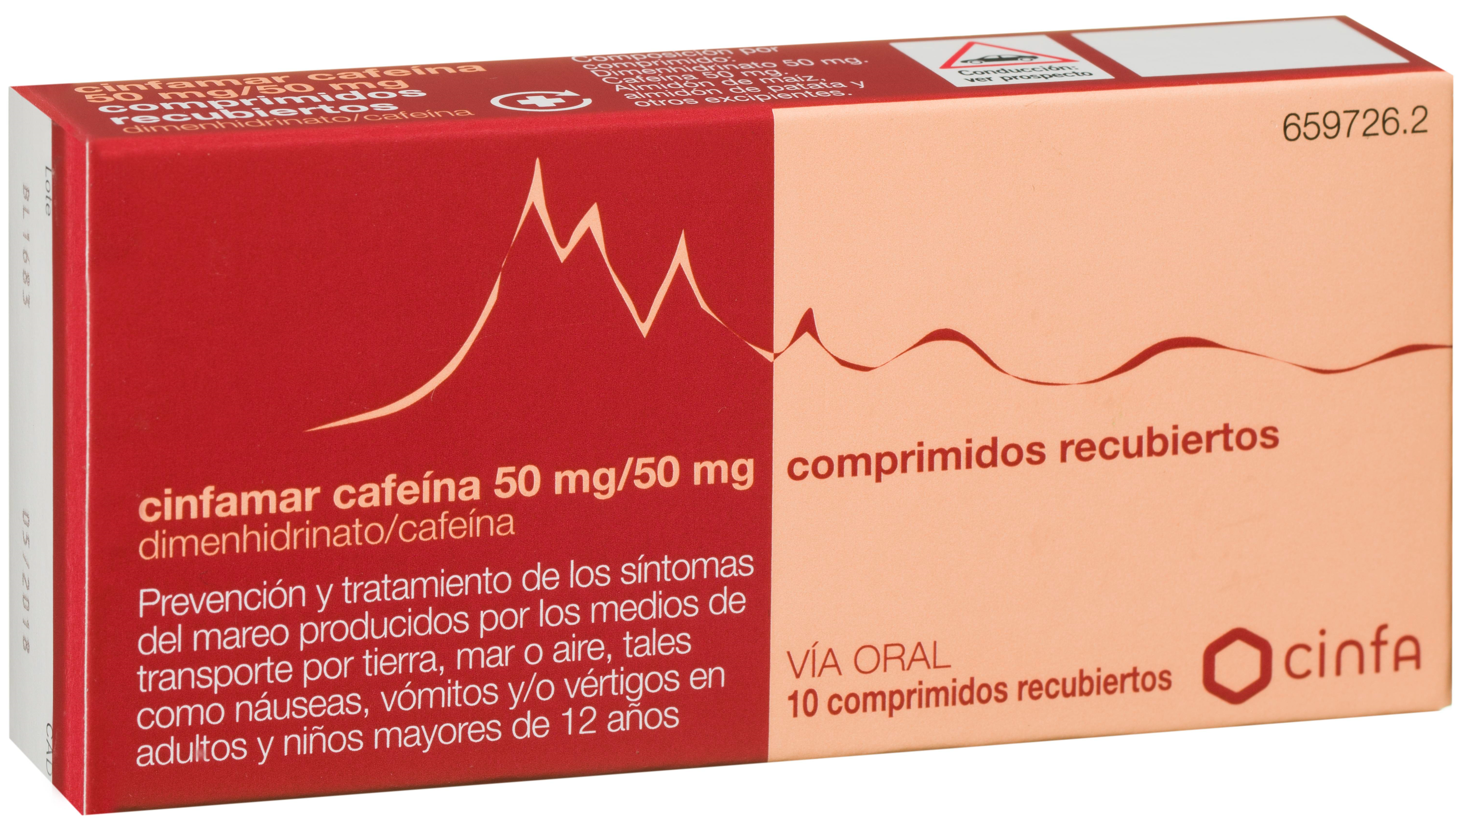 CinfaMar Cafeína 50/50 mg Comprimidos Recubiertos